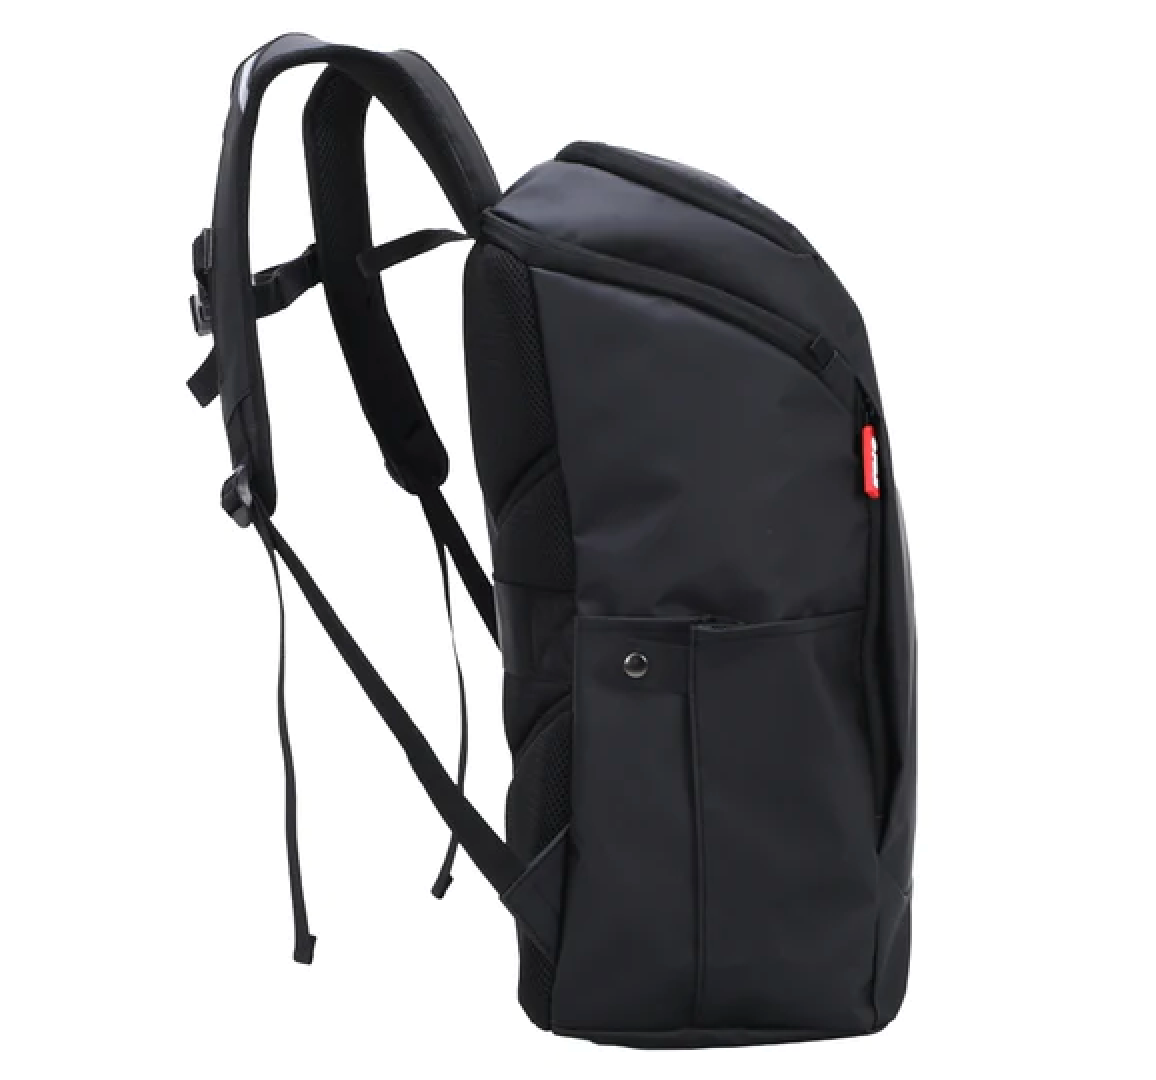 Urban Day Backpack Black by Fuji